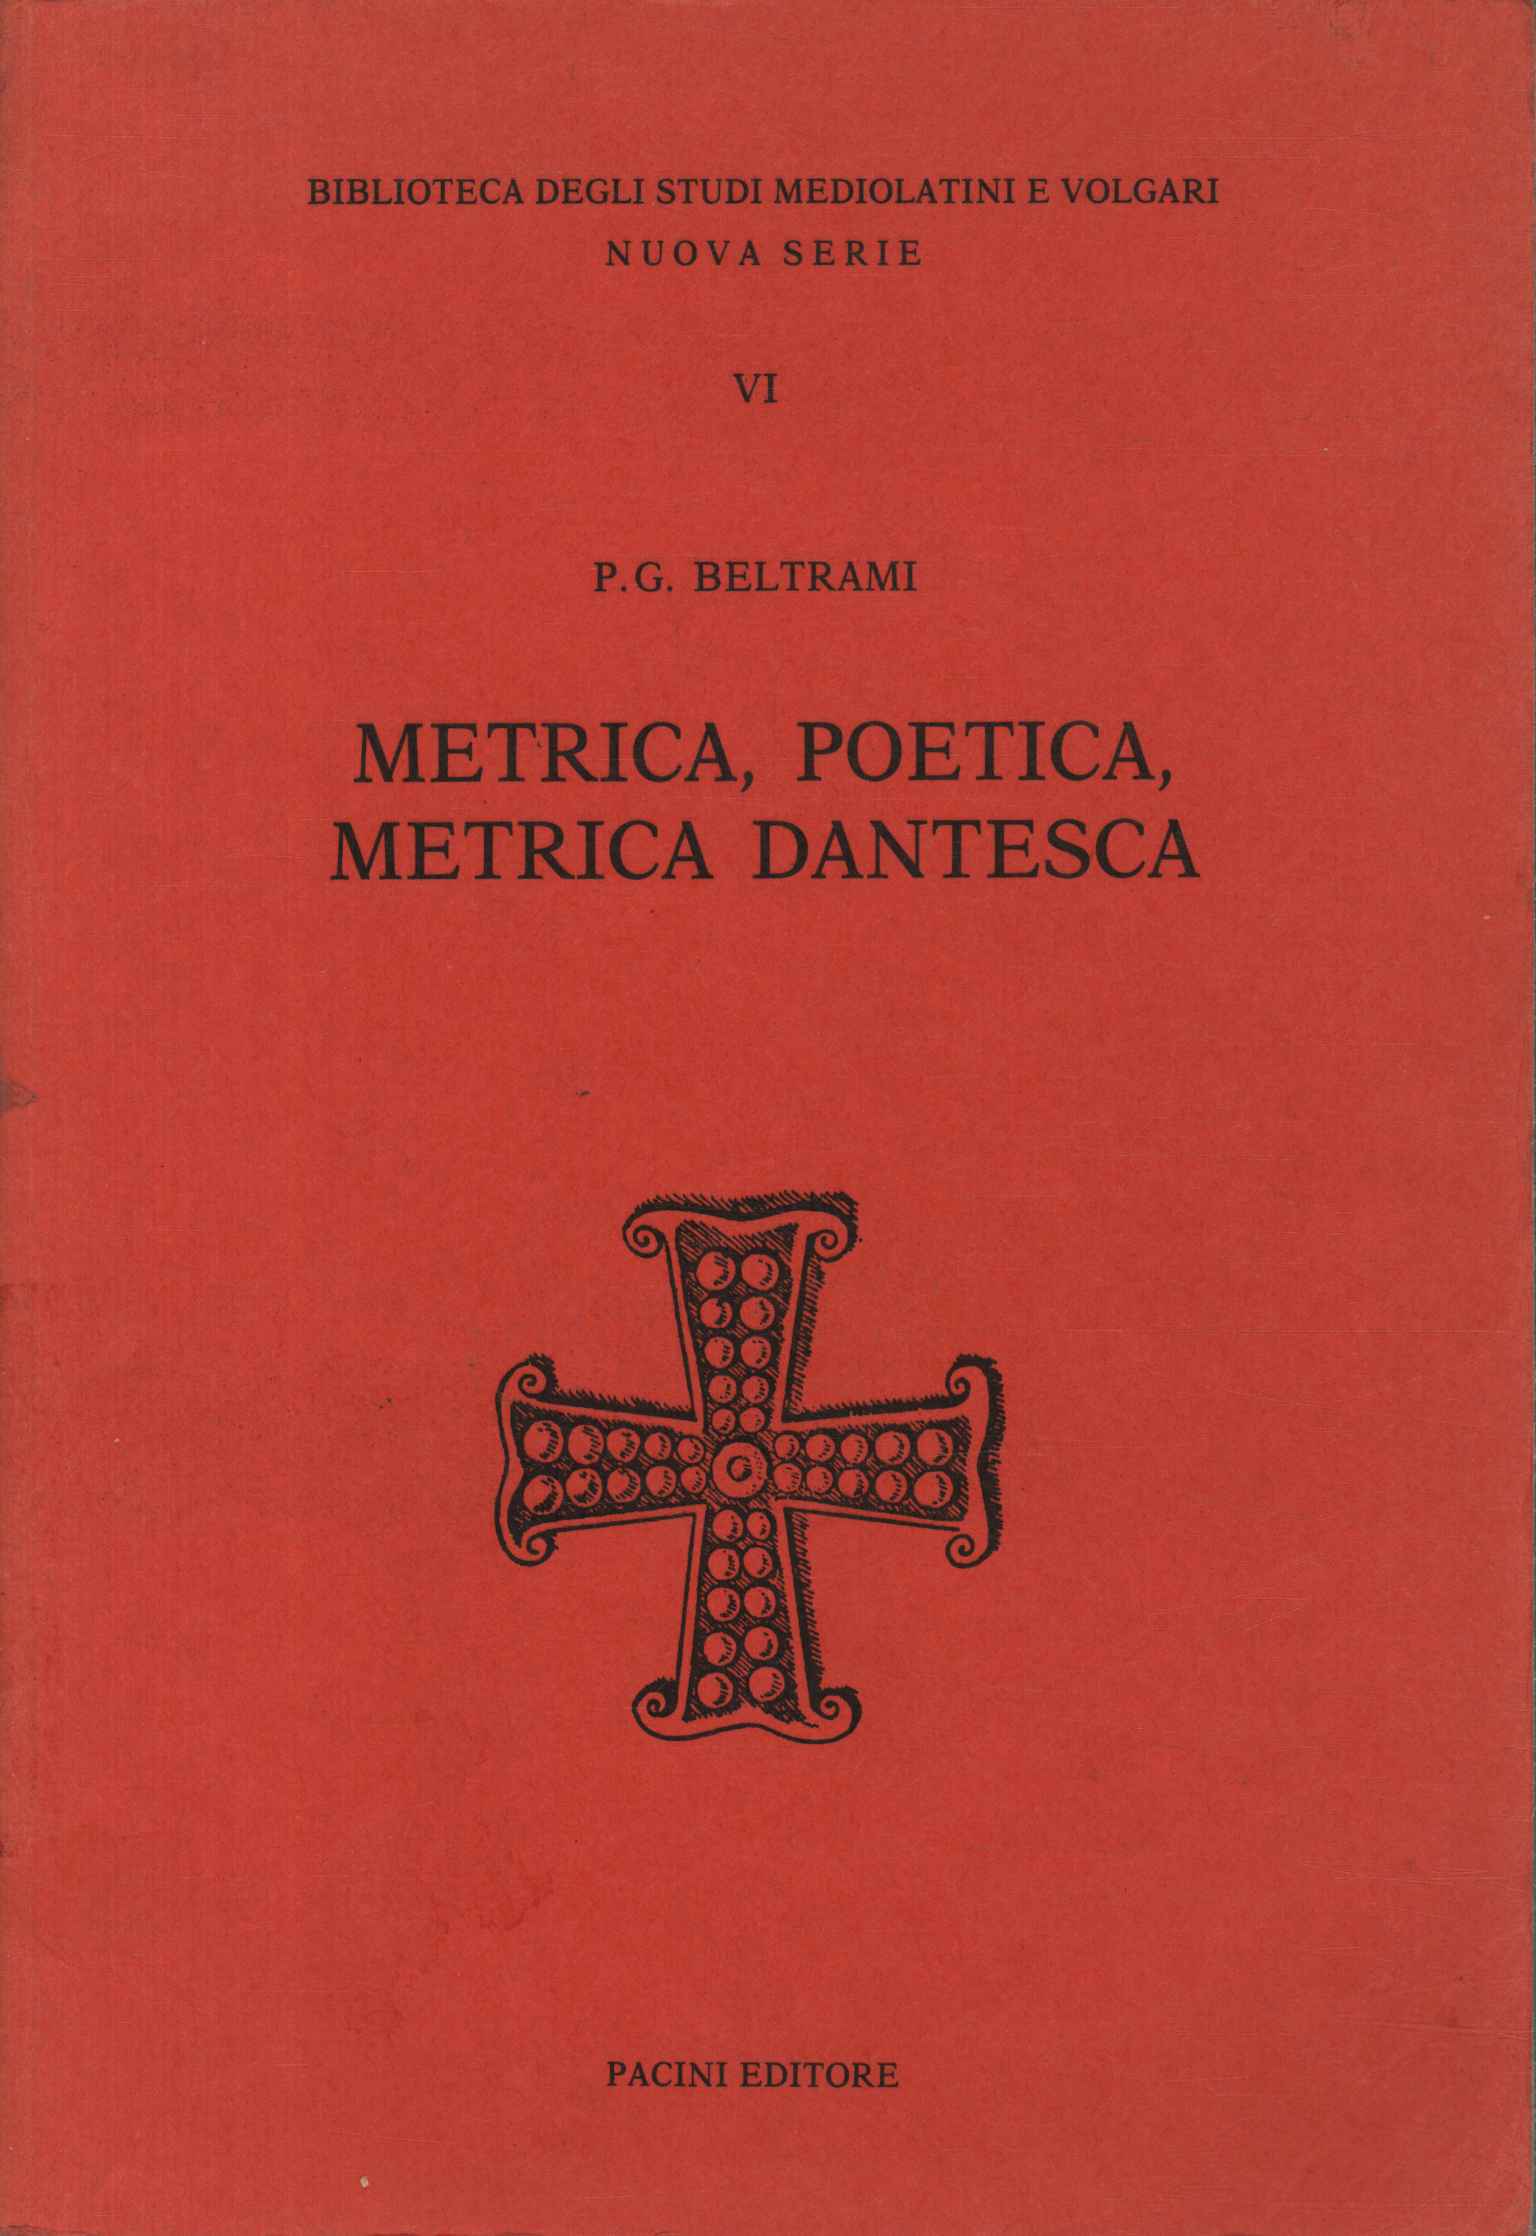 Poetic metrics, Dante's metrics,Poetic metrics, Dante's metrics